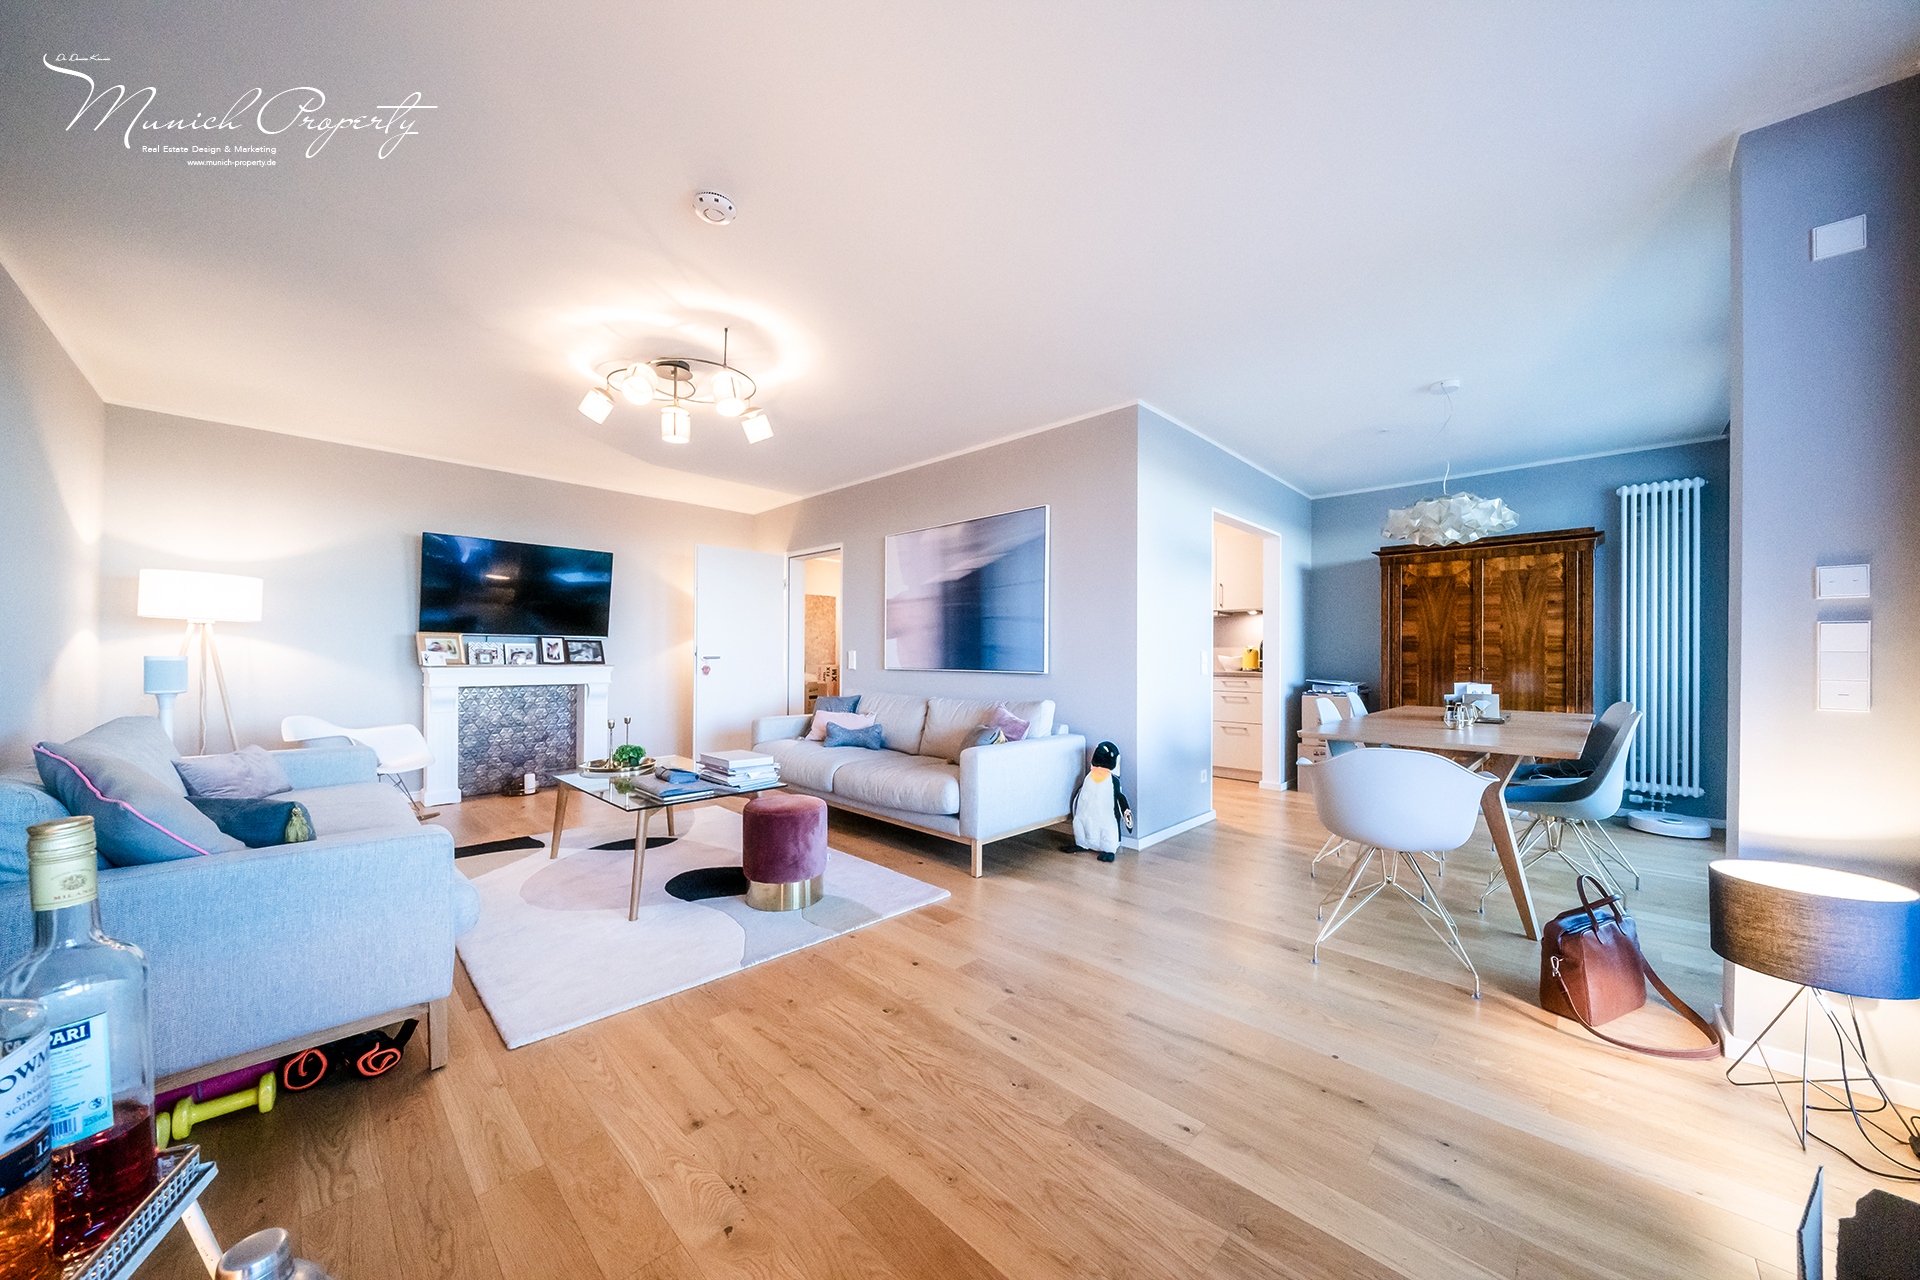 Außergewöhnlich schöne 4 Zimmer Wohnung mit 3 Süd-Balkonen und Alpenblick